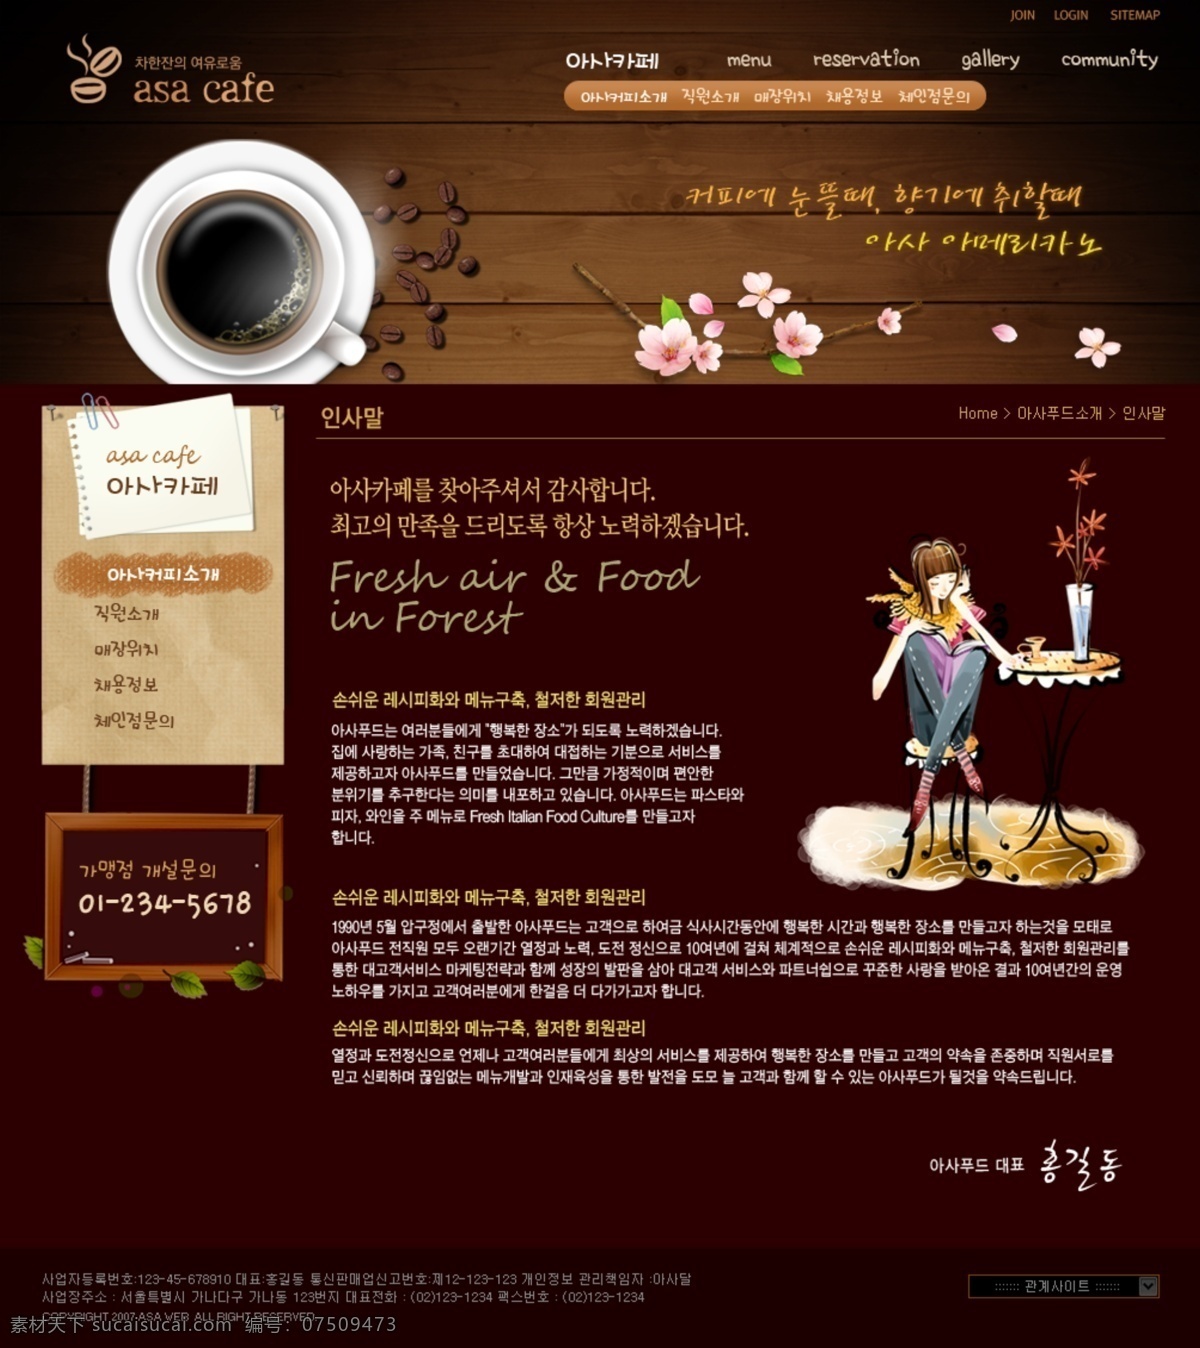 韩国 网页设计 模块 复古风格 国外网站 韩国网页 页面设计 食品类网站 网页素材 网页模板